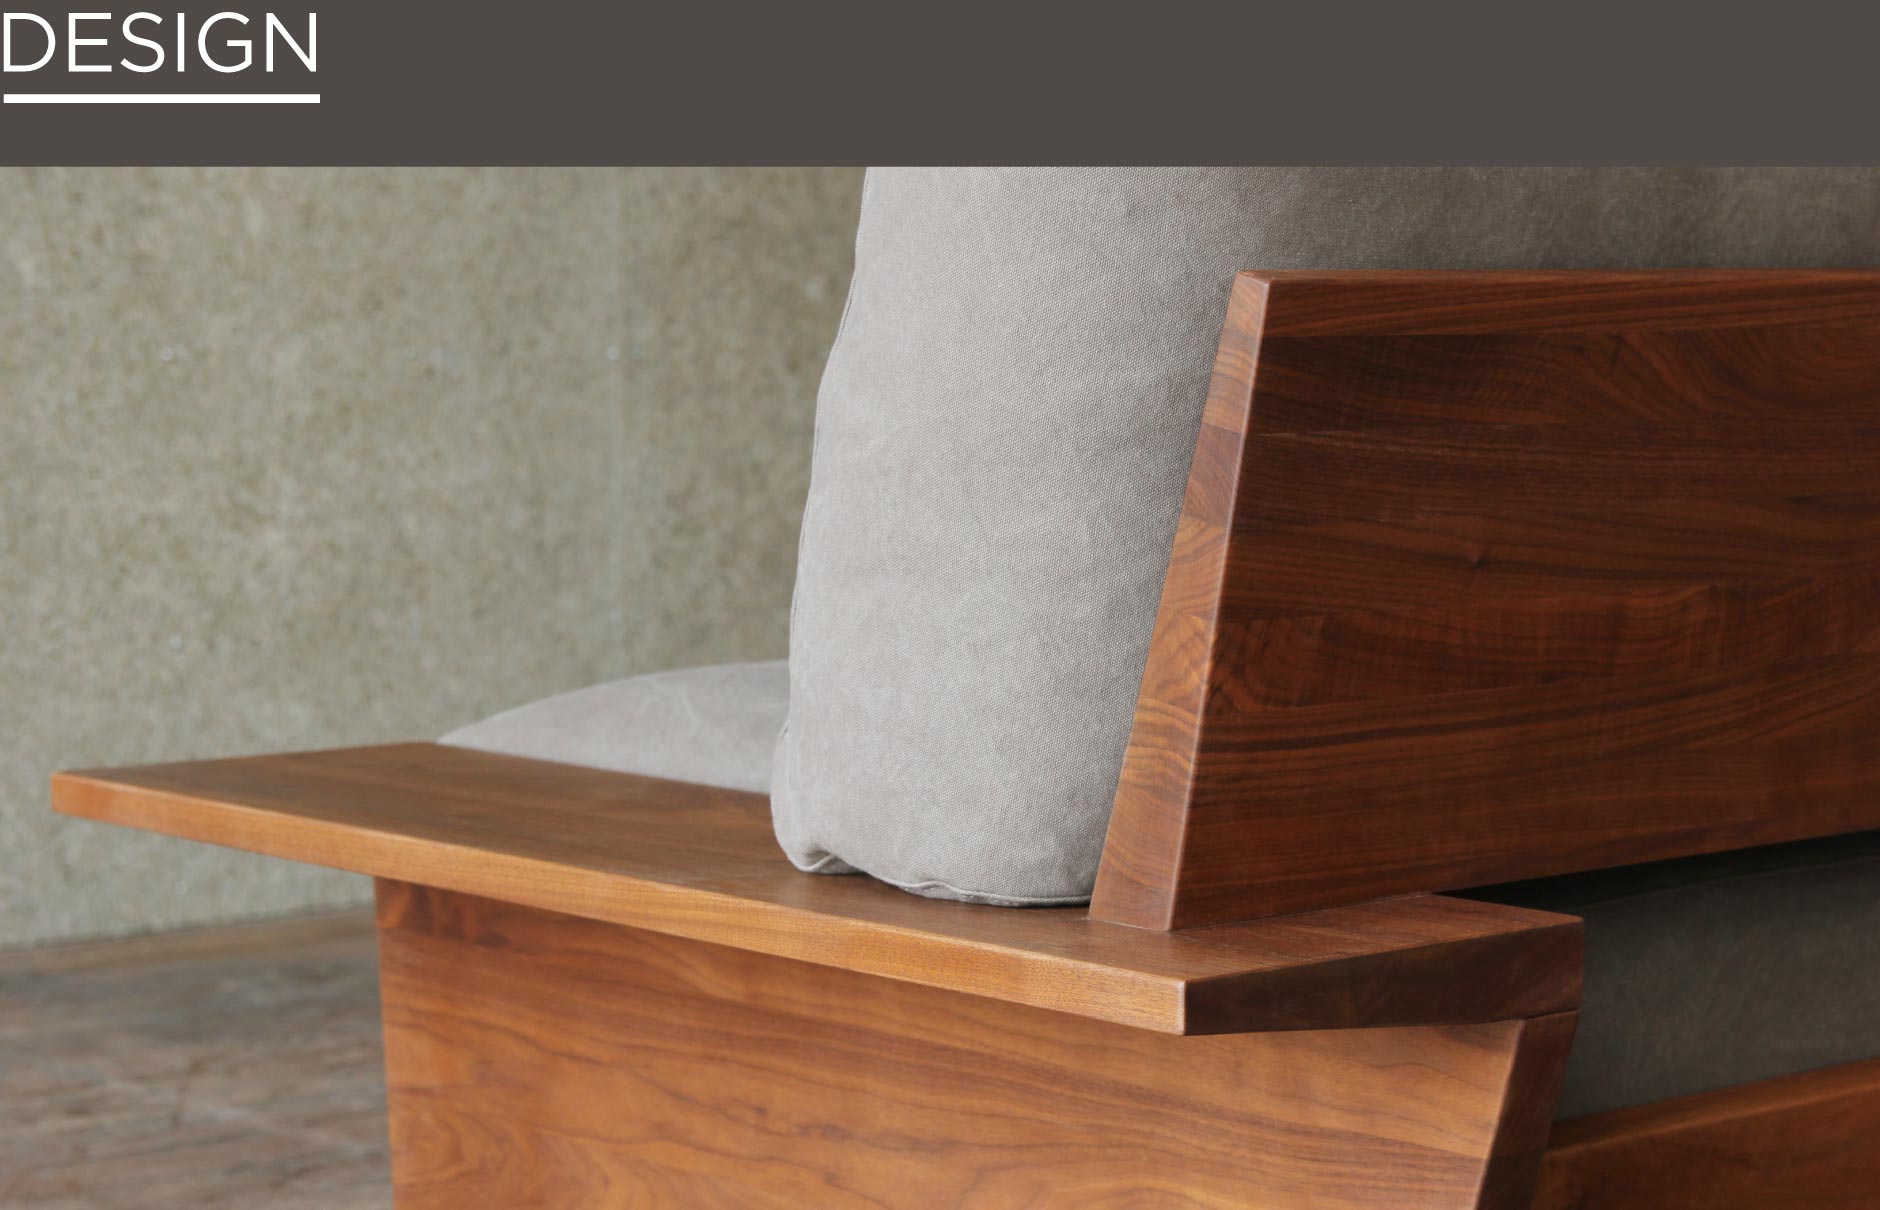 無垢材を贅沢に使用したSOLIDソファ06。木フレームの存在感とフェザークッションの贅沢な座り心地を兼ね備えた無垢家具です。名古屋栄